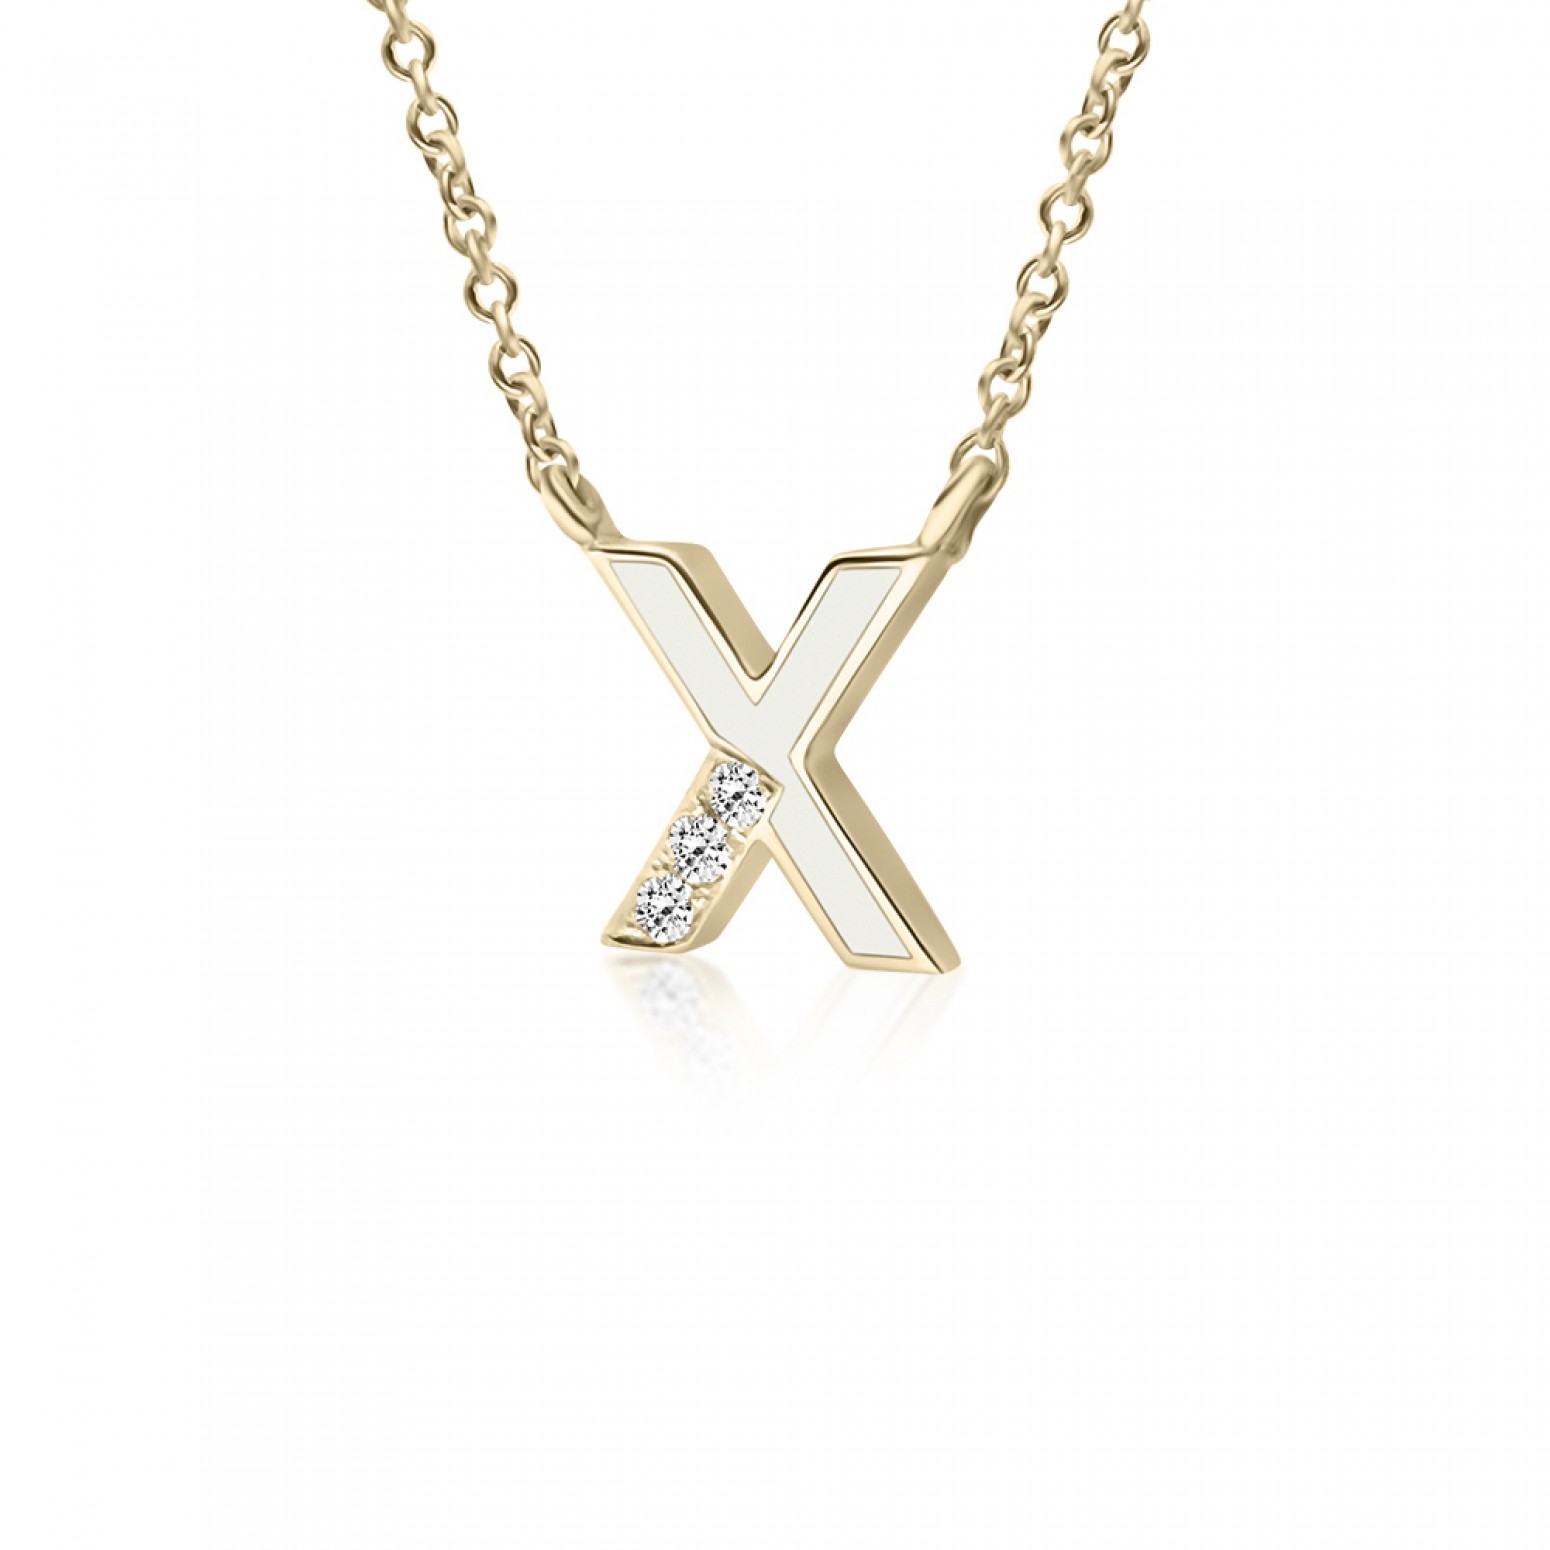 Monogram necklace Χ, Κ18 gold with diamonds 0.03ct, VS1, H and enamel, ko5454 NECKLACES Κοσμηματα - chrilia.gr